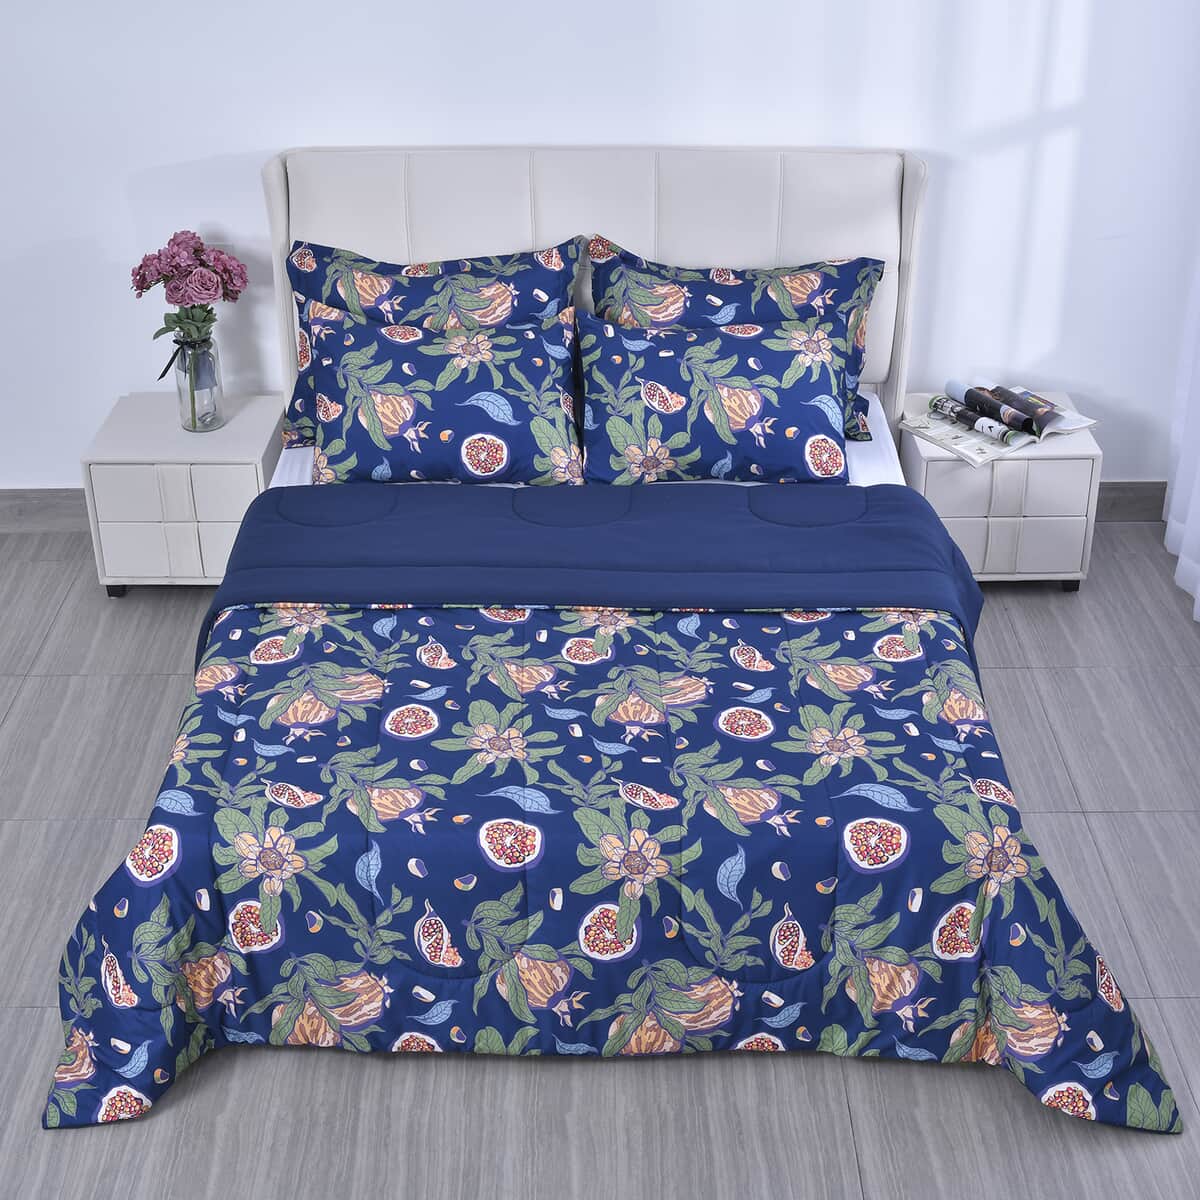 HOMESMART Blue Digital Floral Printed Microfiber 5pcs Comforter Set - Queen image number 1